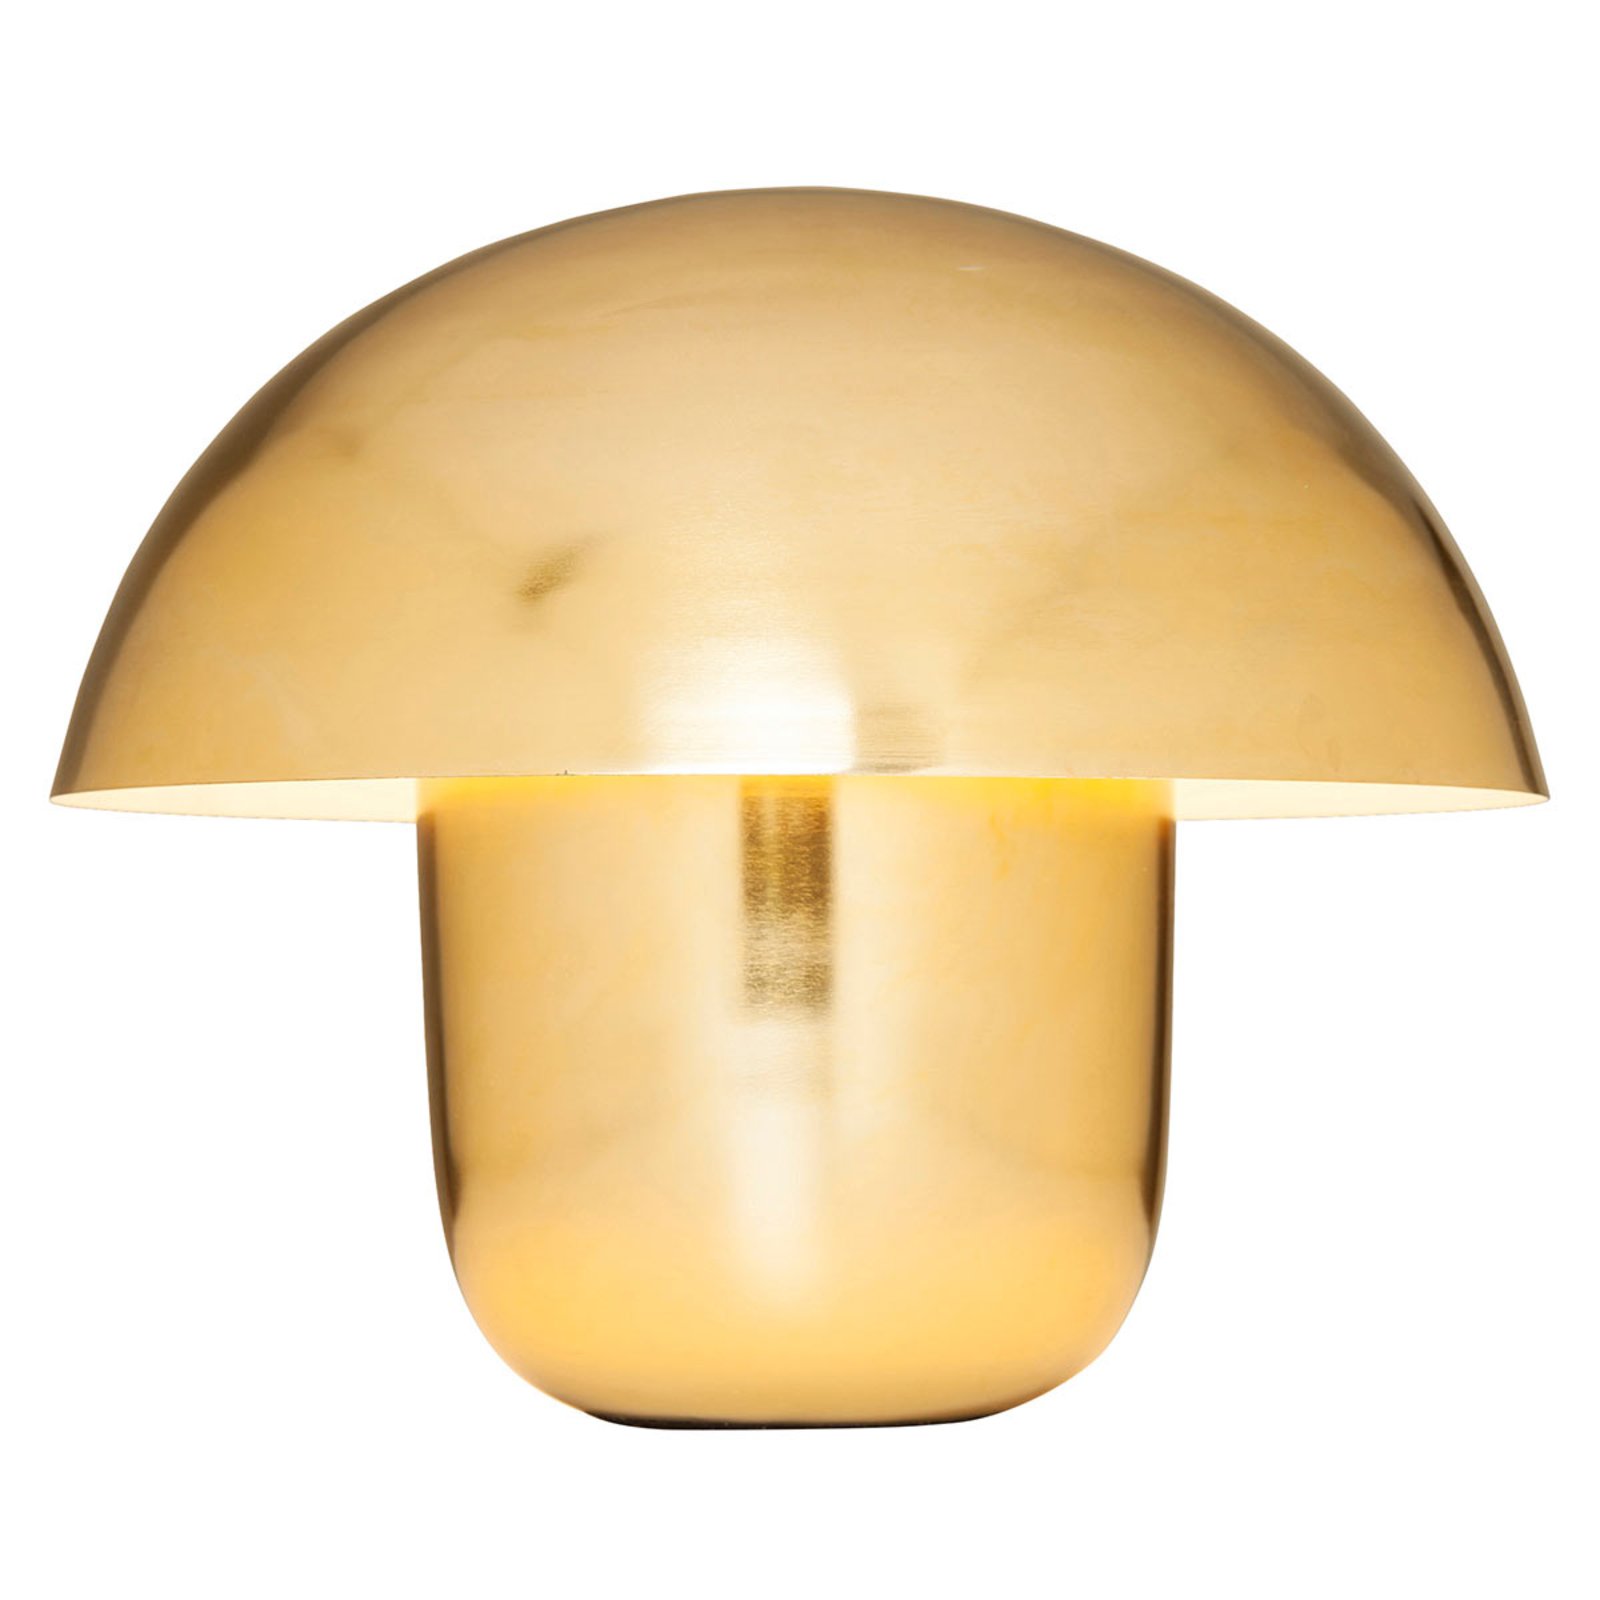 KAREN Mushroom - tafellamp in de vorm van een paddestoel, goud